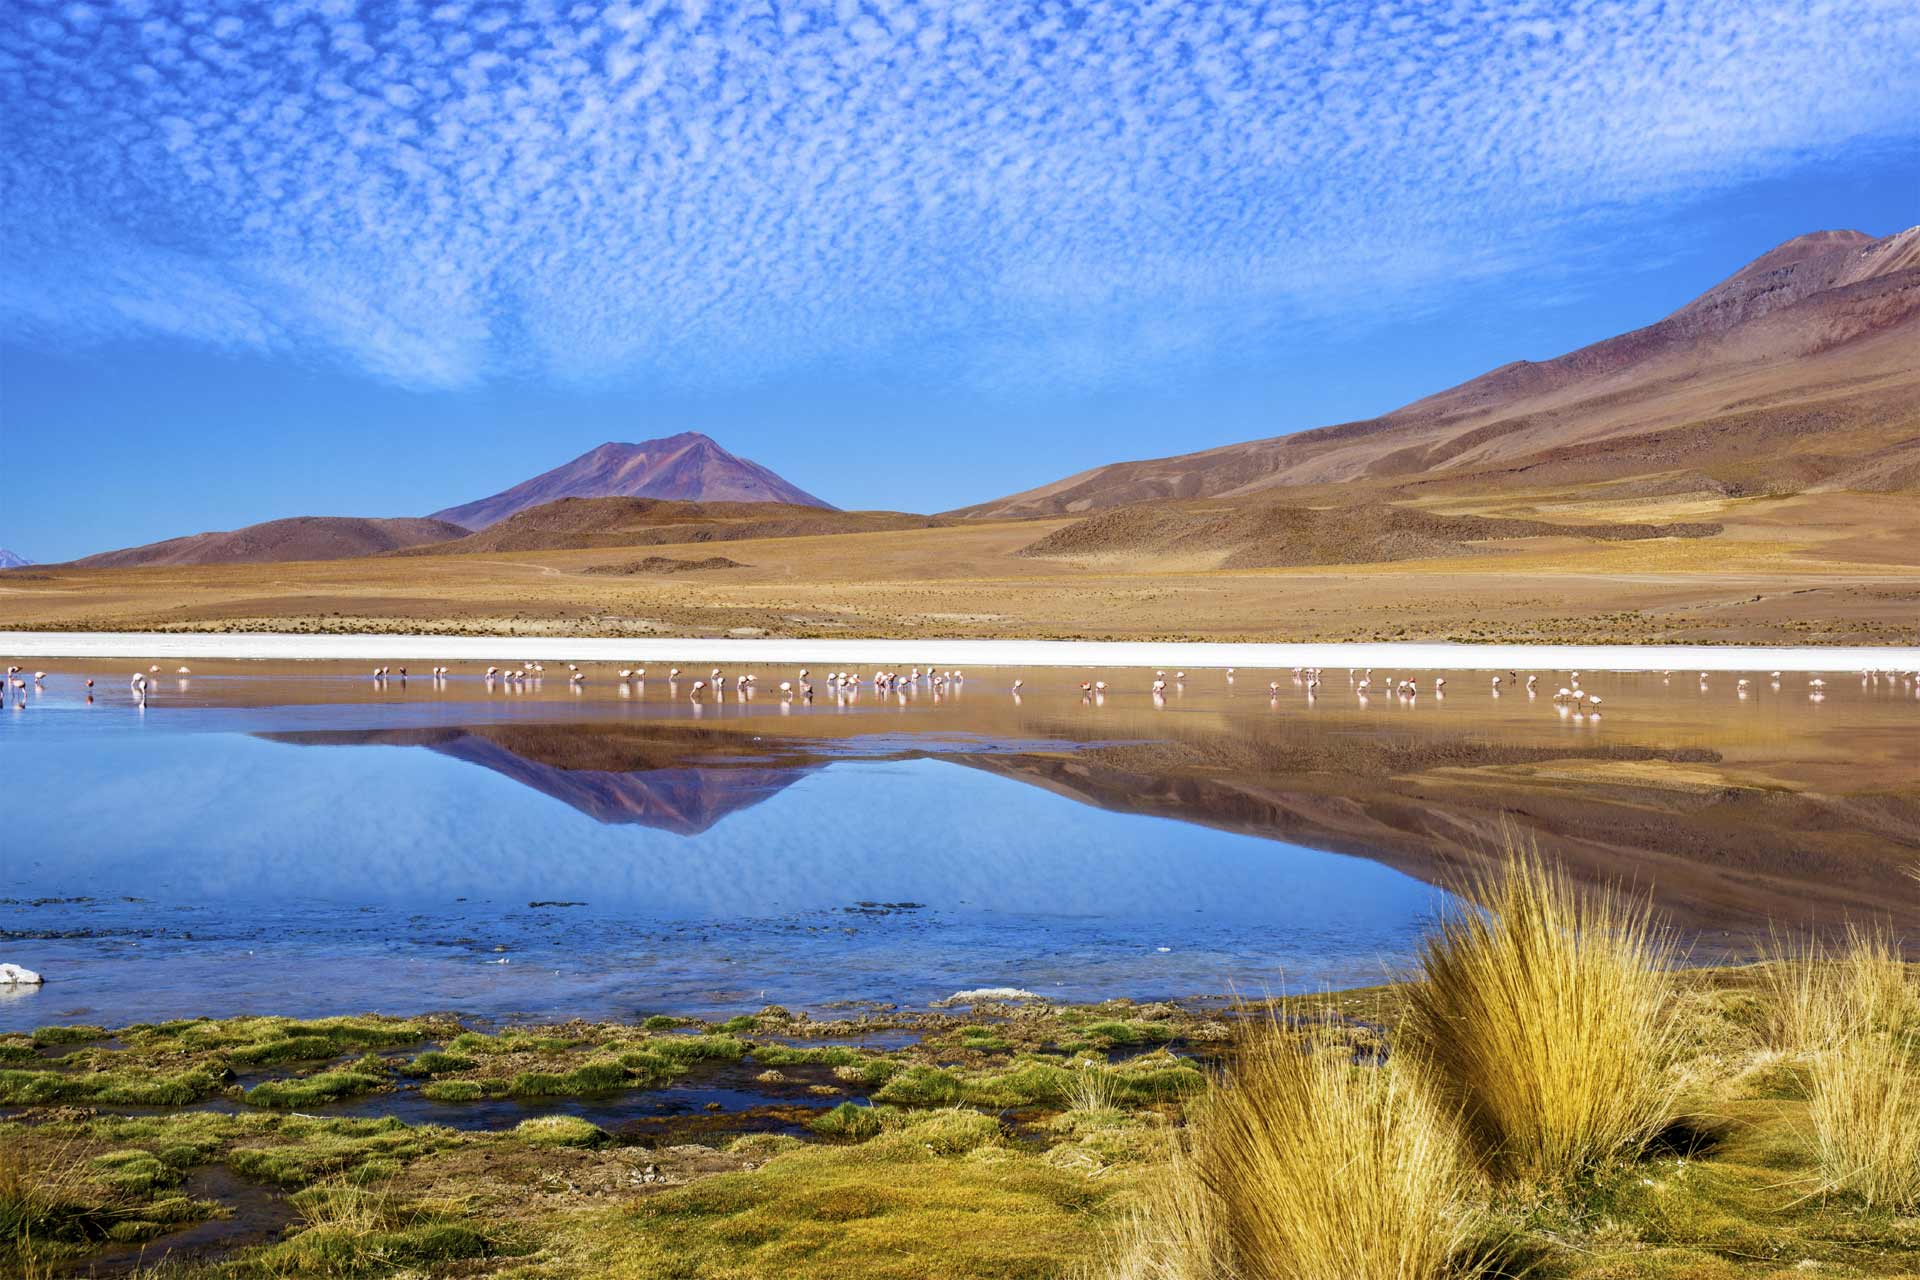 El país andino busca mejorar su infraestructura para presentar una oferta turística basada en la naturaleza y la cultura